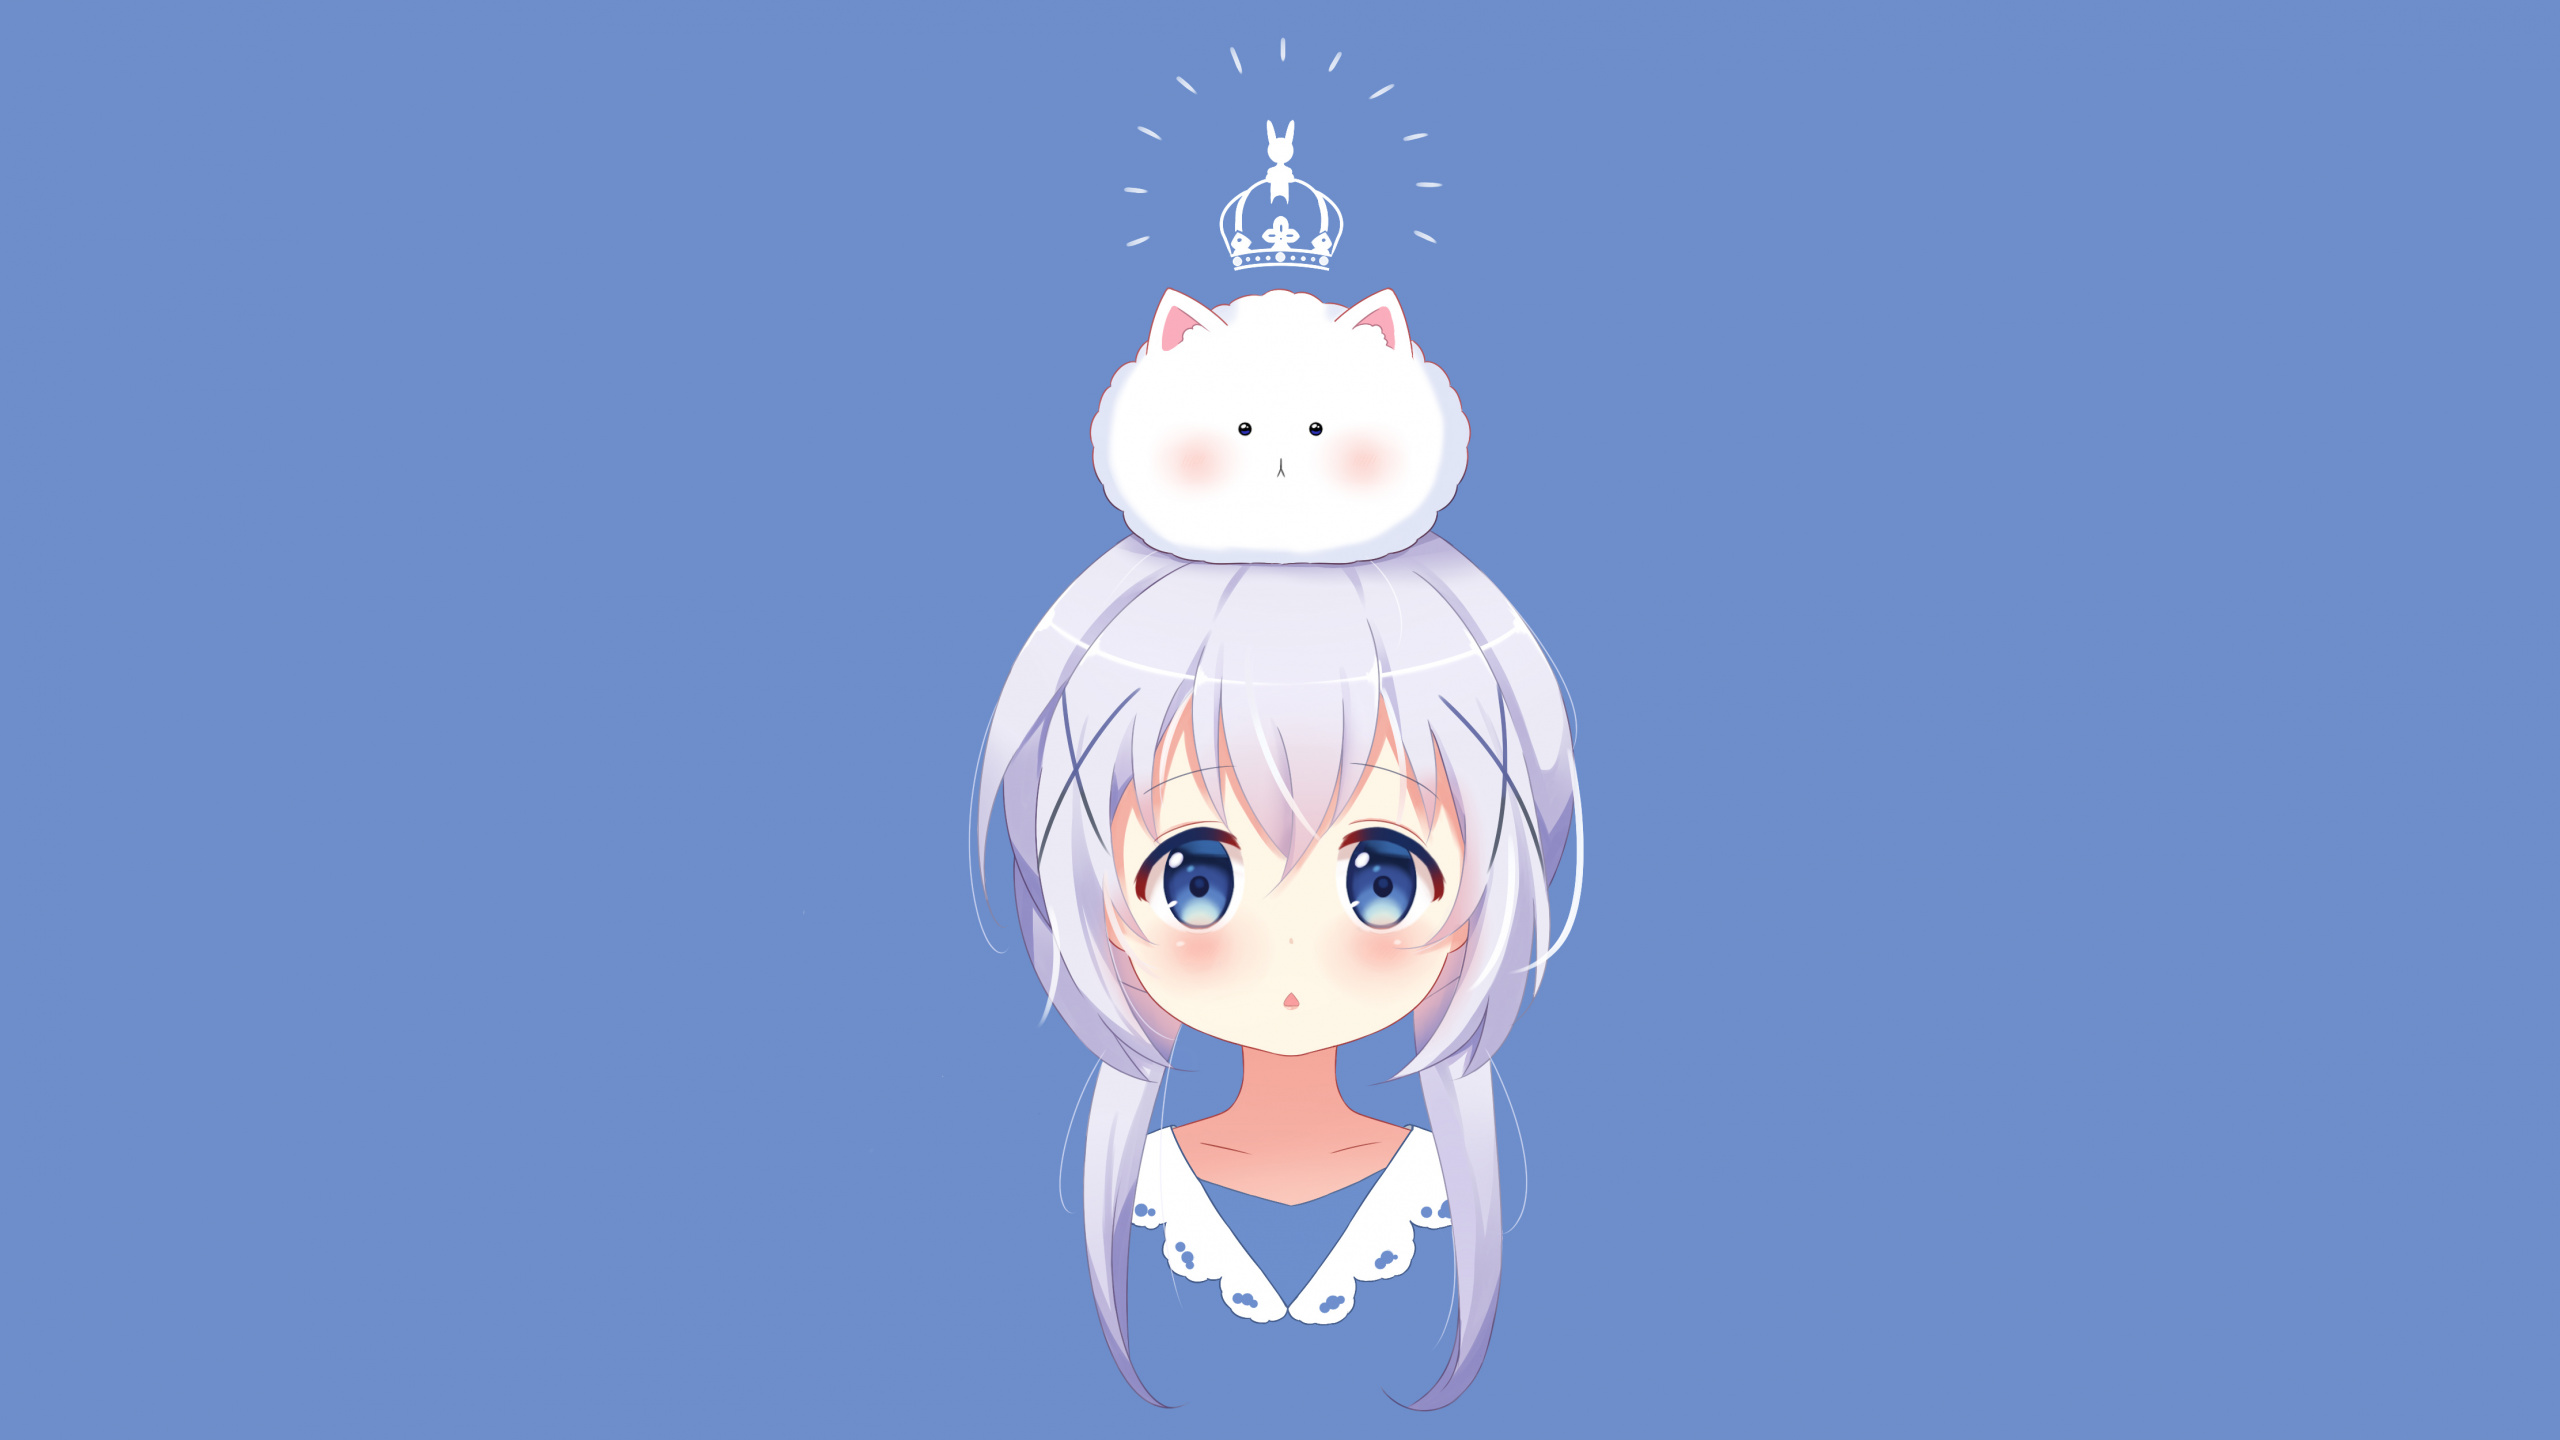 Chica en Vestido Azul y Blanco Personaje de Anime. Wallpaper in 2560x1440 Resolution